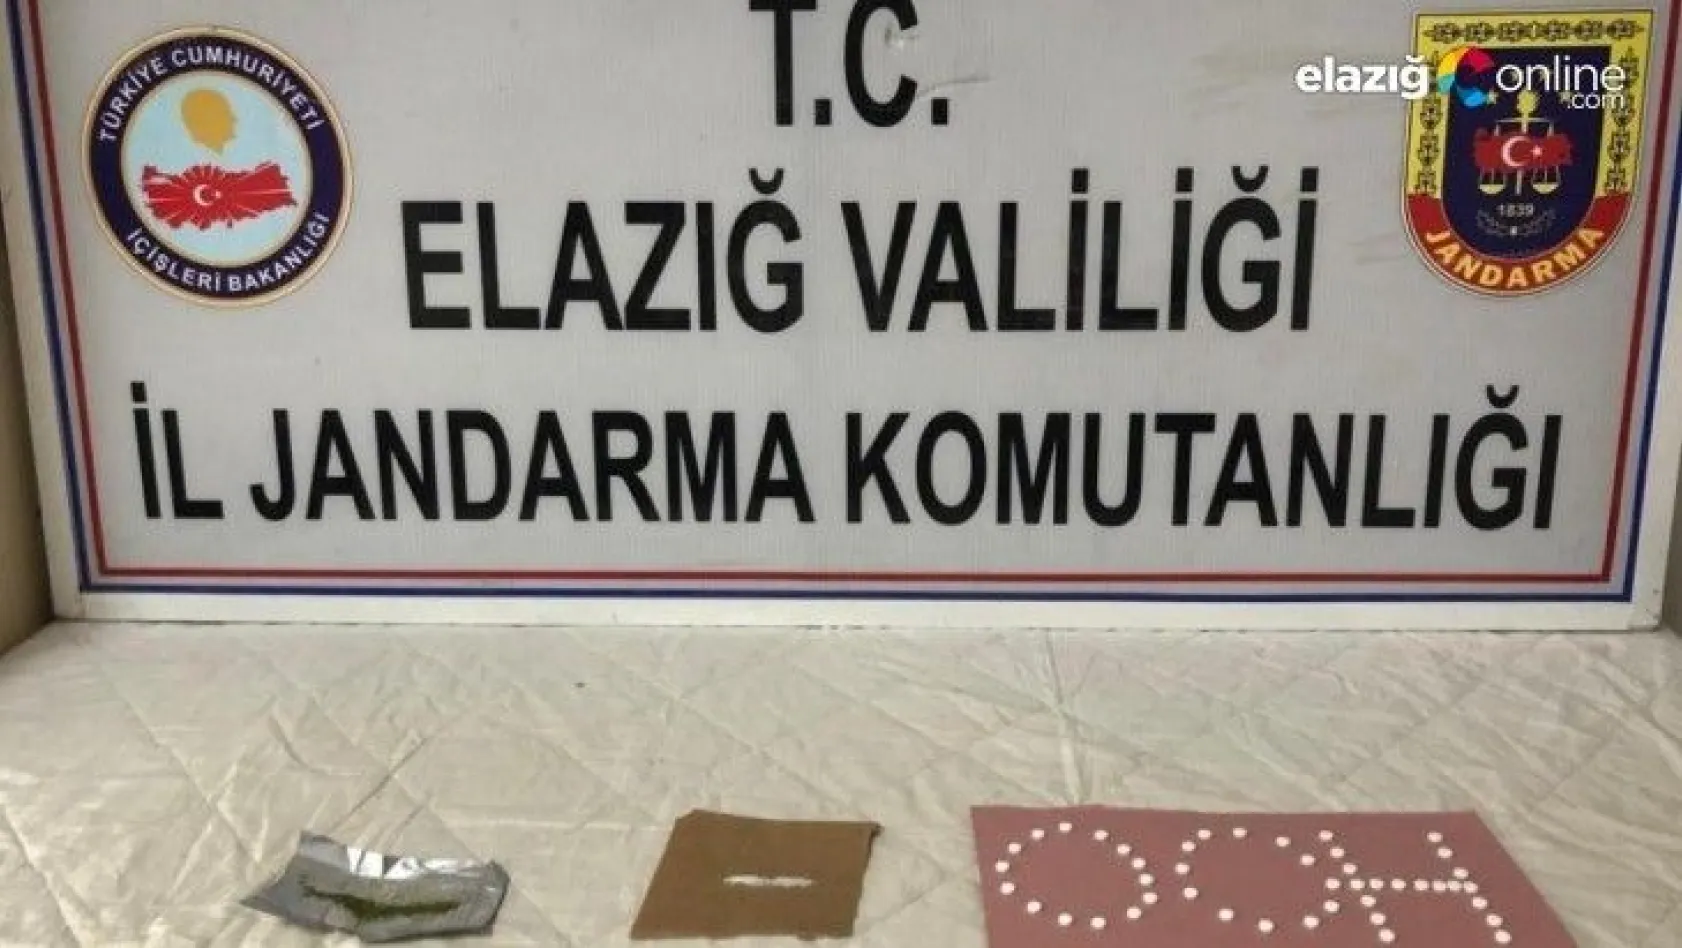 Elazığ'da uyuşturucu ile mücadele 2 şüpheli yakalandı